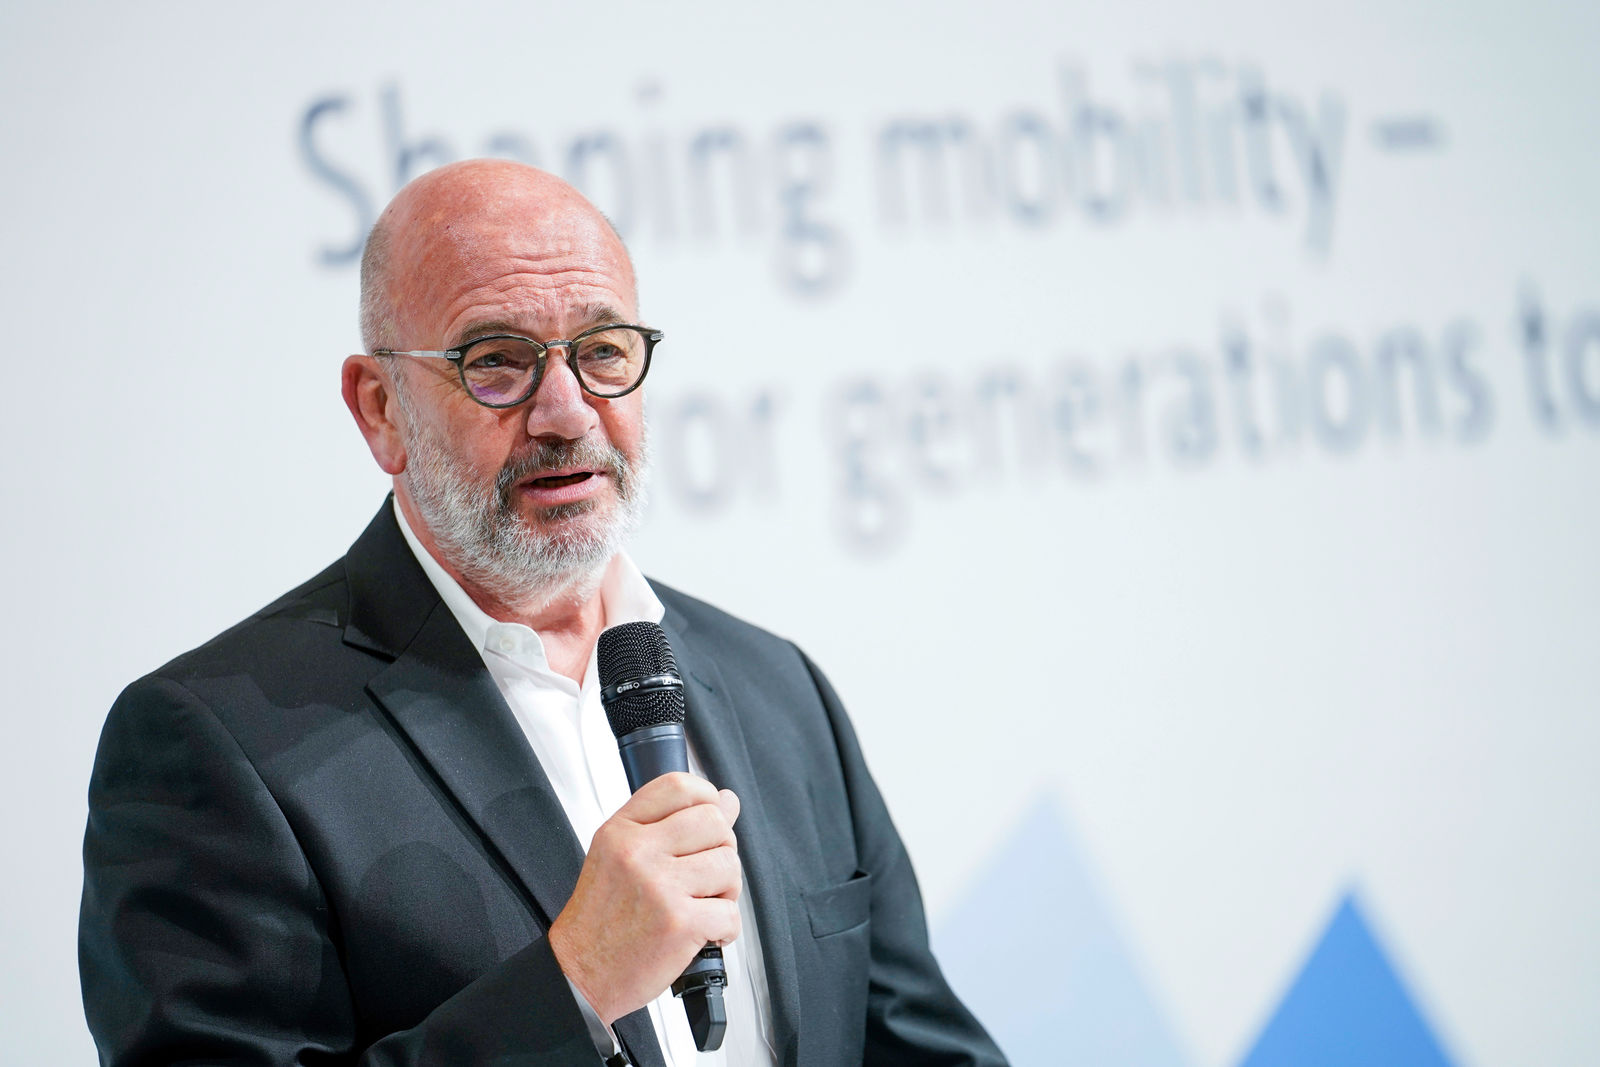 Volkswagen Konzern startet Batteriezellentwicklung und -fertigung in Salzgitter